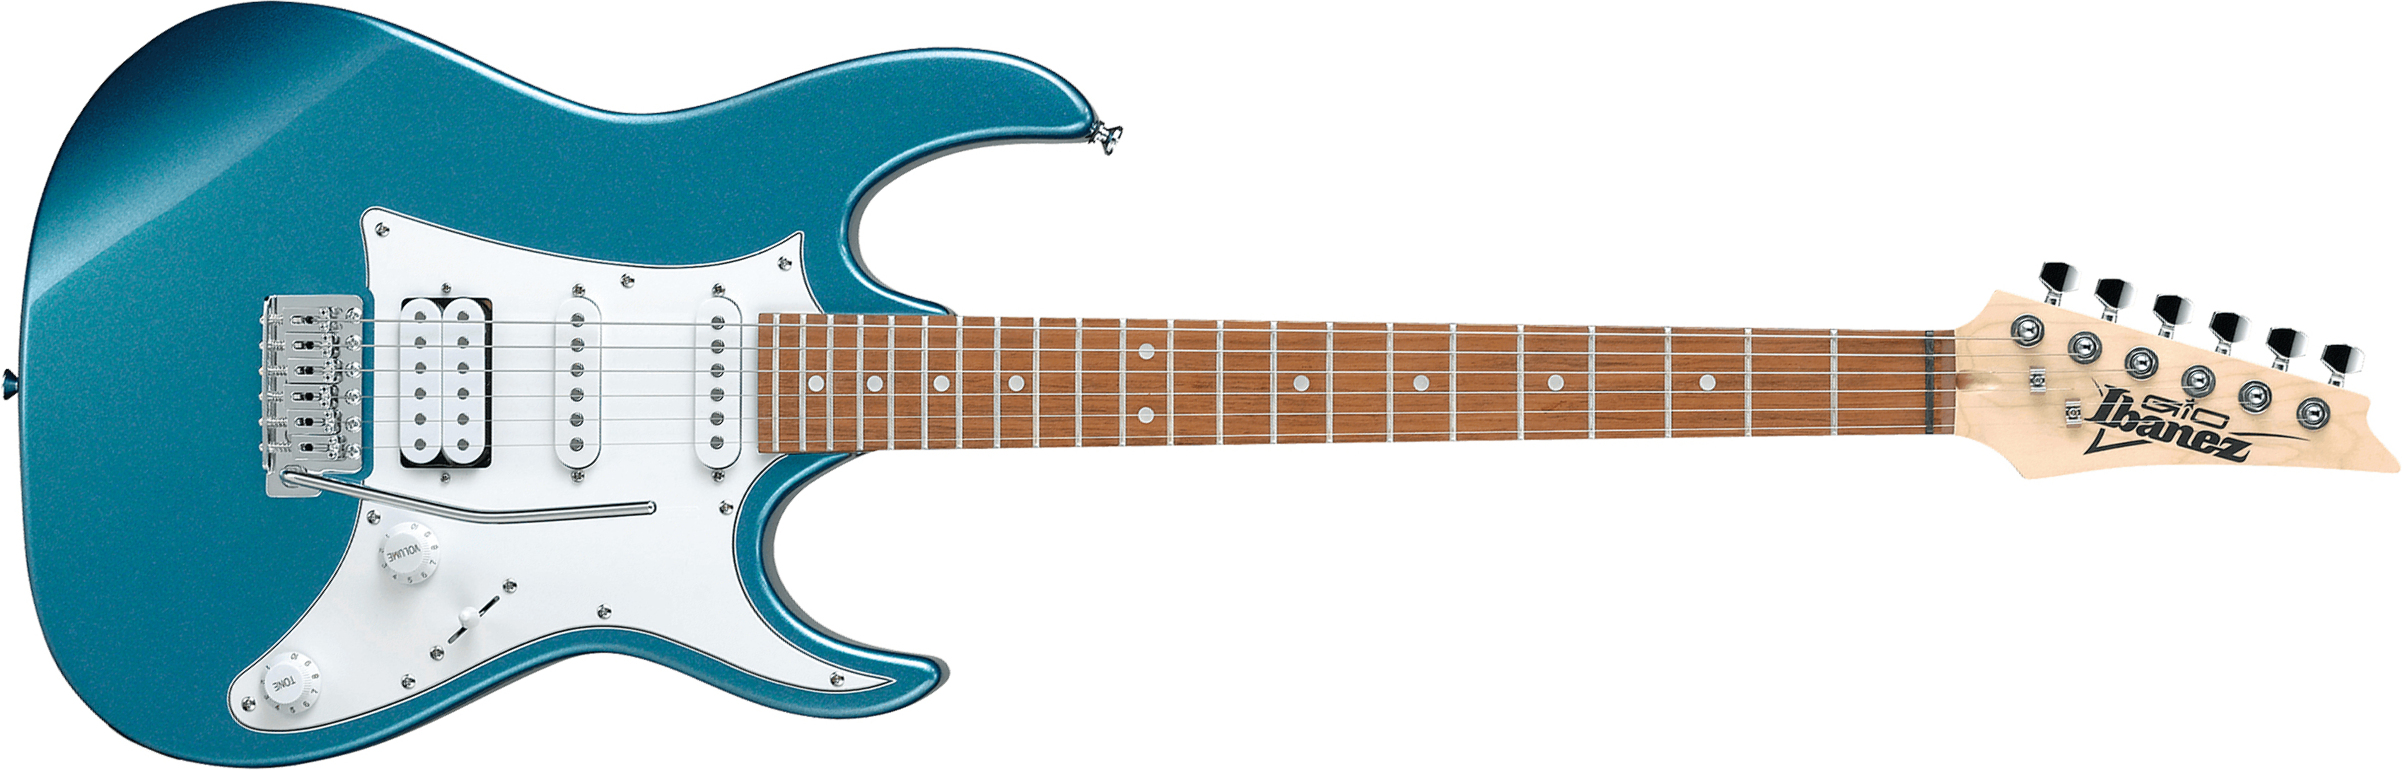 Ibanez Grx40 Mlb Gio Hss Trem Jat - Metallic Light Blue - Guitare Électrique Forme Str - Main picture